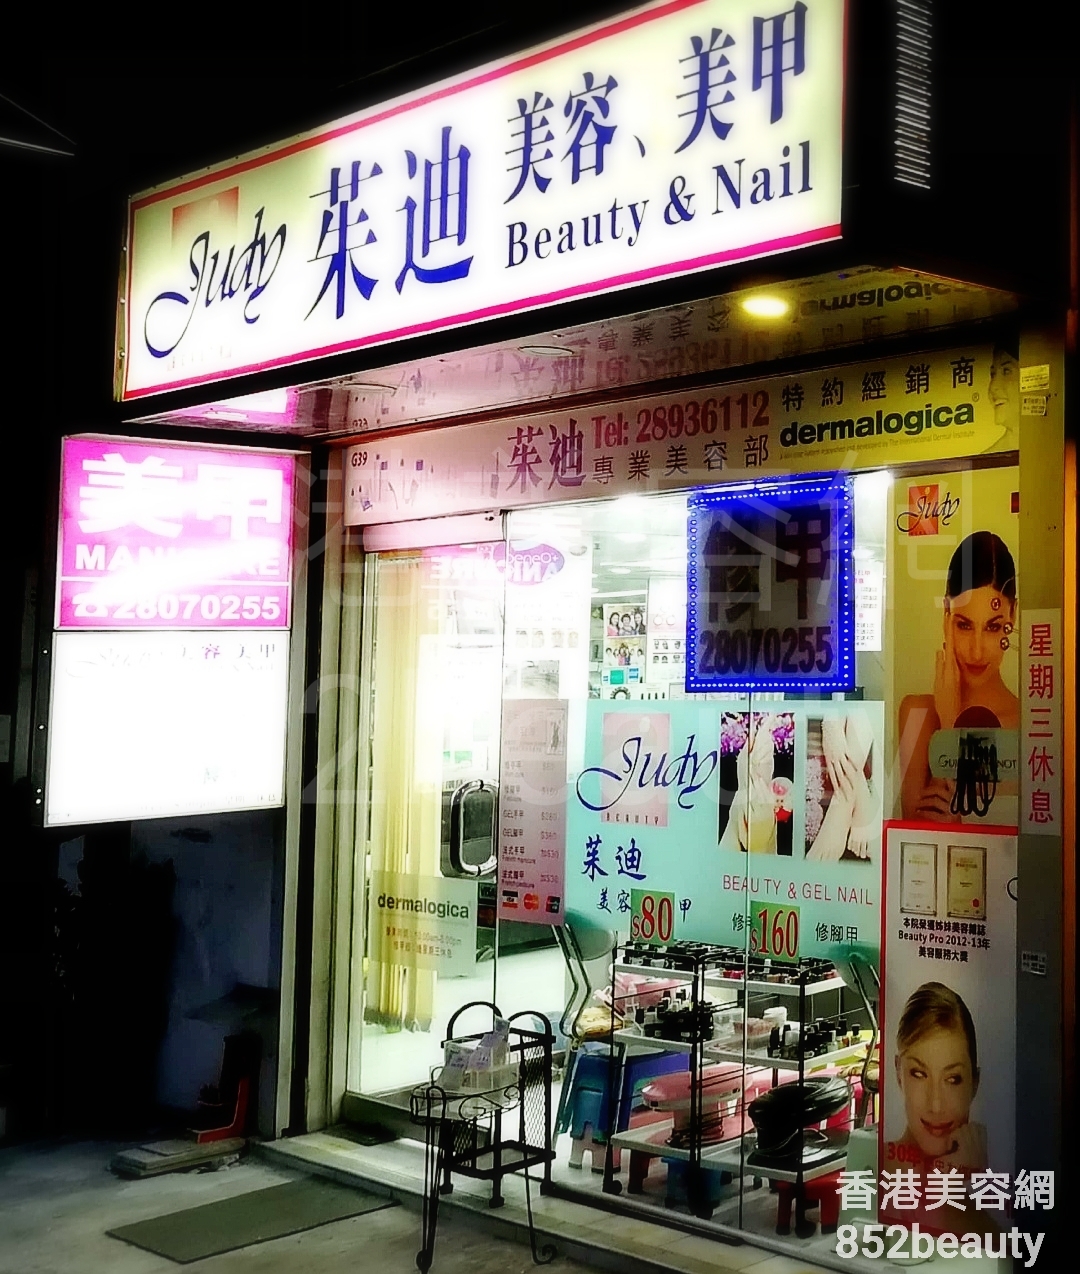 香港美容網 Hong Kong Beauty Salon 美容院 / 美容師: Judy Beauty & Nail 茱迪 美容 美甲